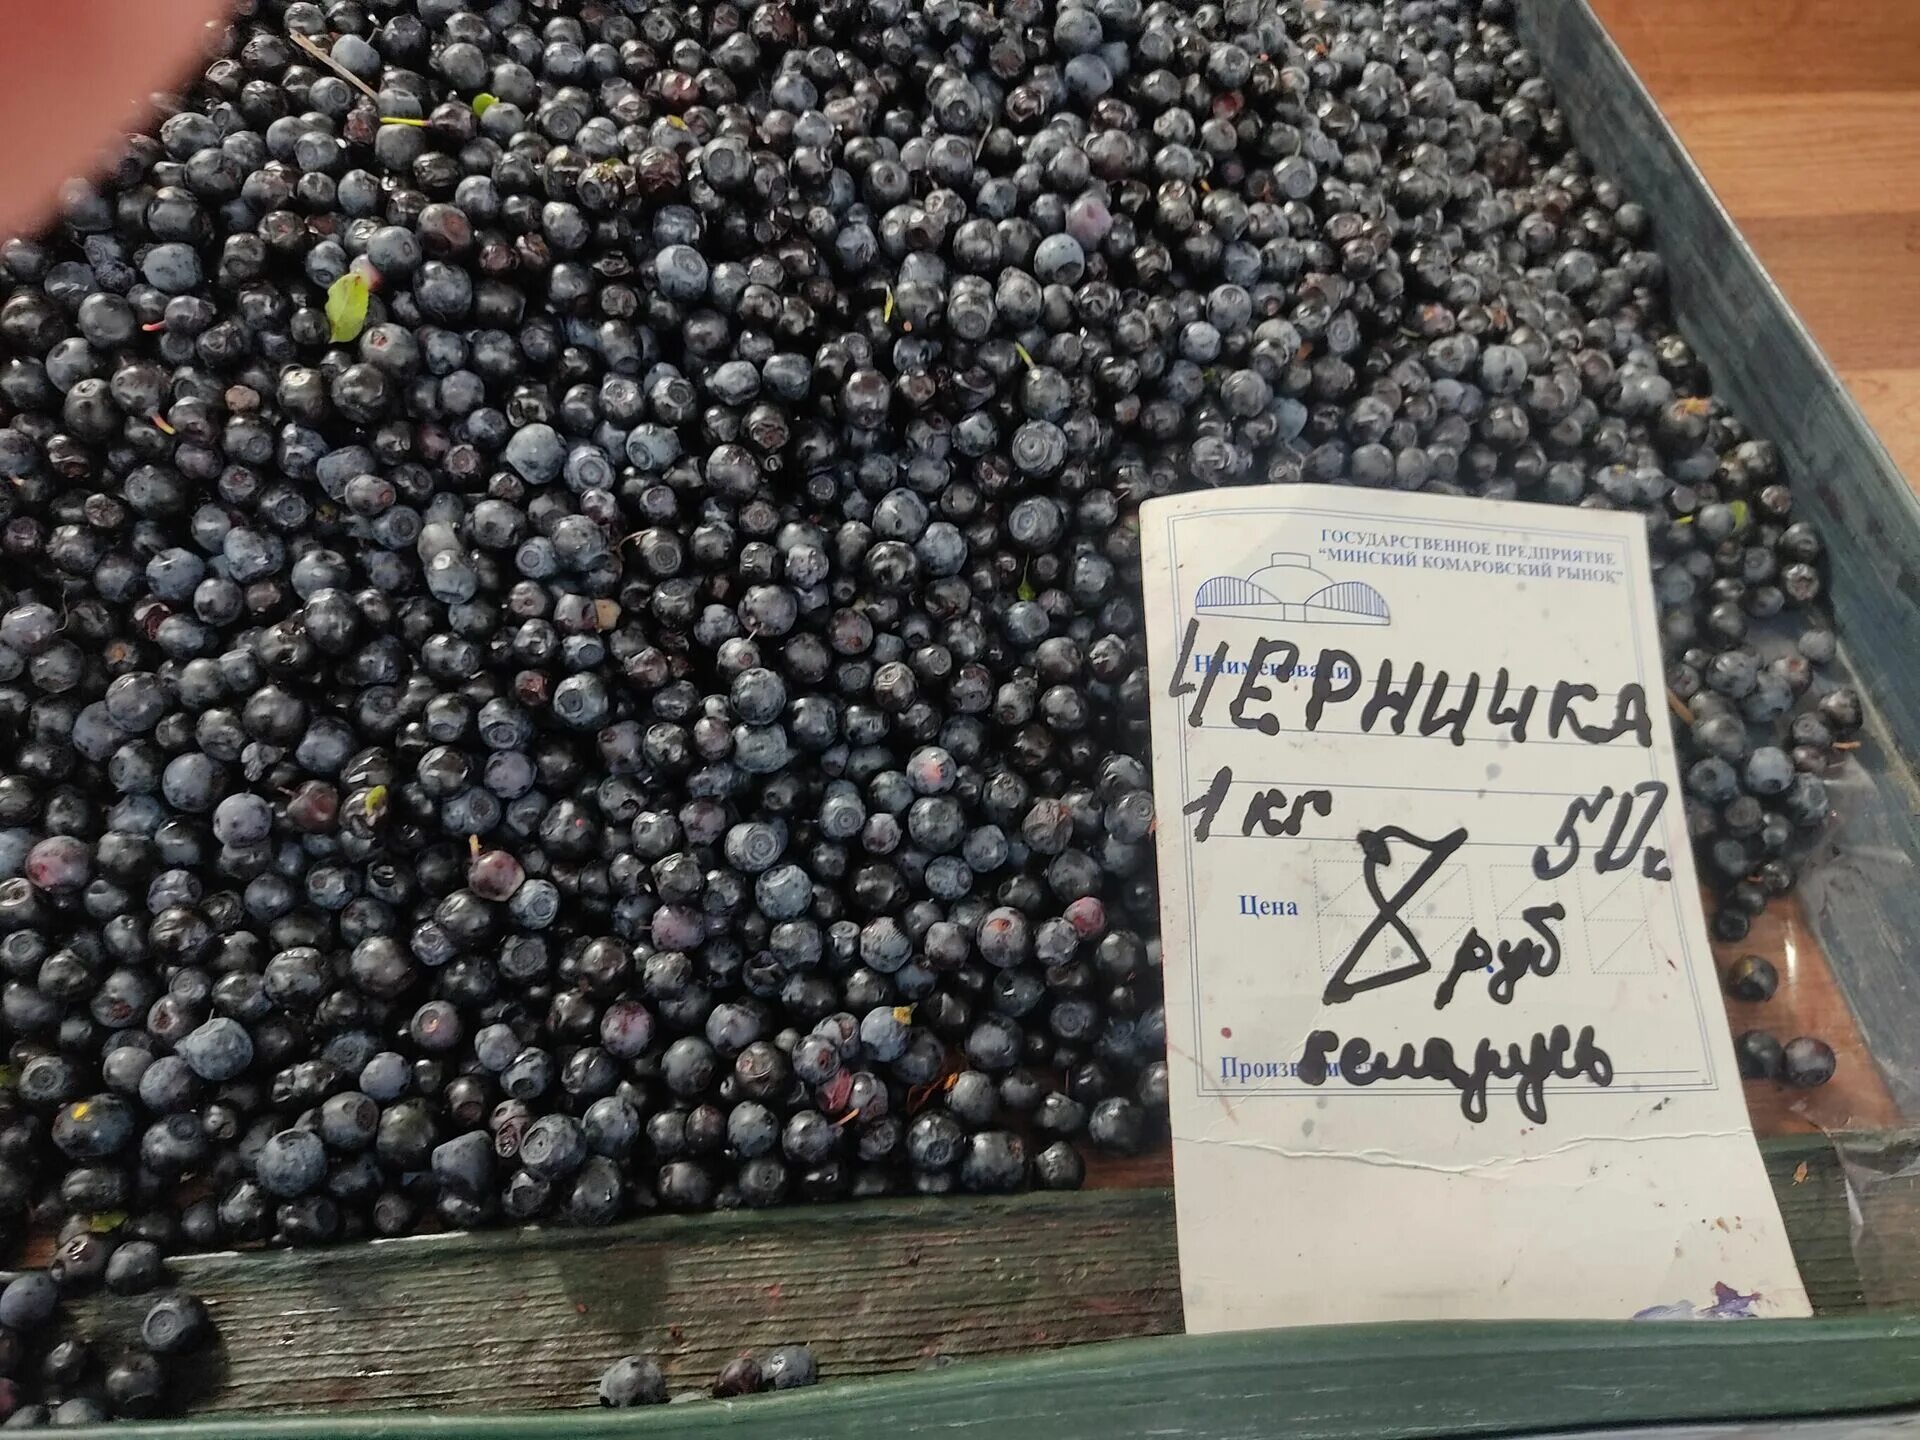 Черника на базаре. 1 Кг черники. Белорусские ягоды. Сколько стоит черника на рынке.